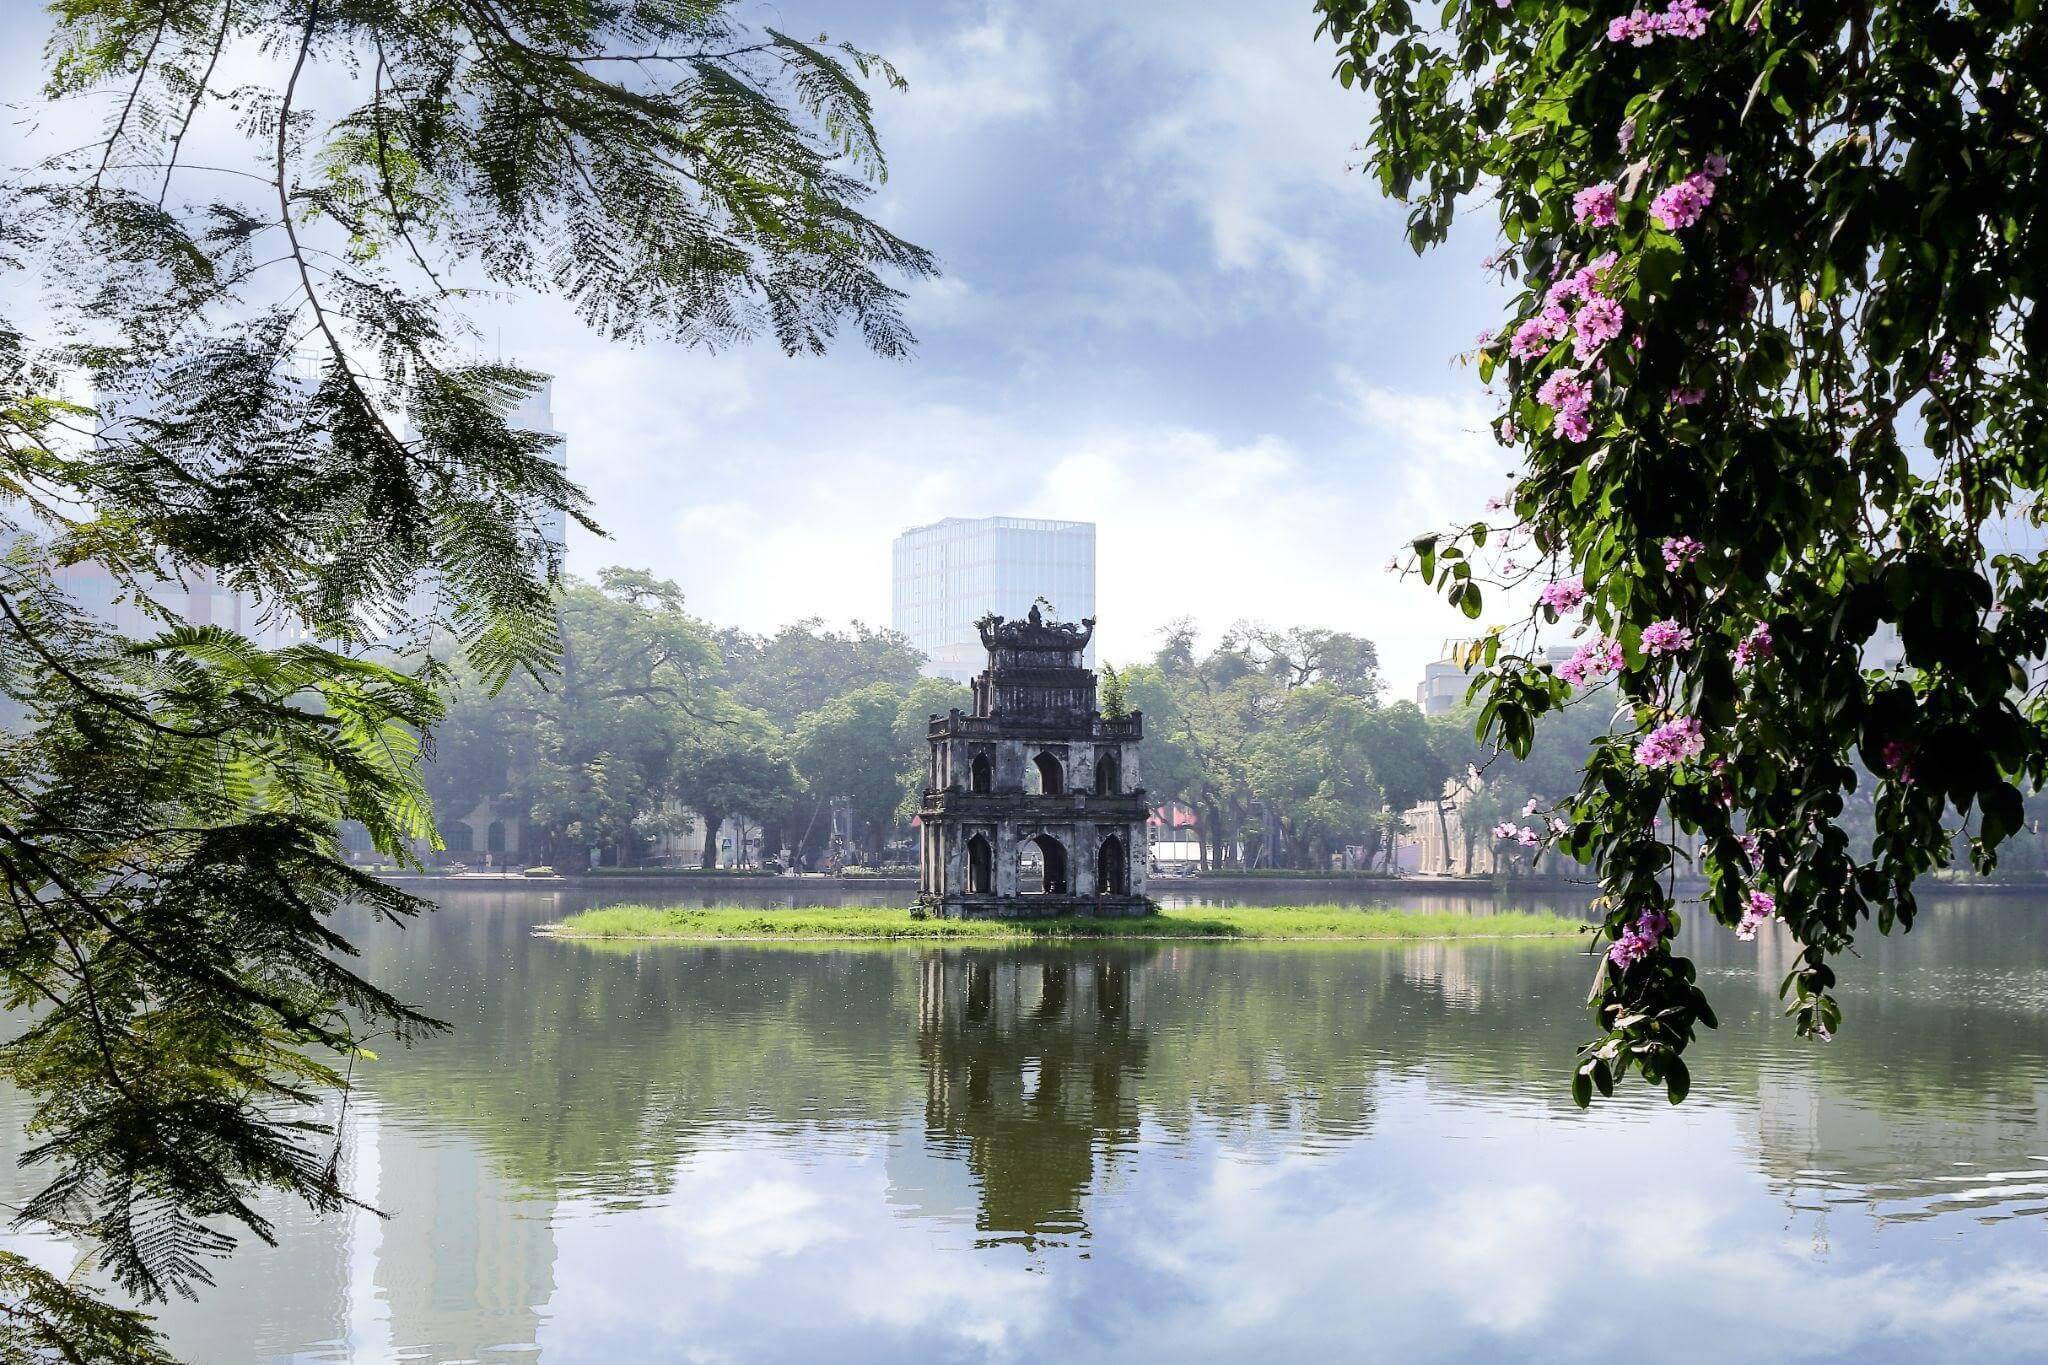 Озеро Хоанкьем. Озеро Хоанкьем Ханой рисунок. Храм в центре озера Хоанкьем башня черепахи. 2rcx+r5 Хоанкьем, Ханой, Вьетнам postcode. Башня ханой